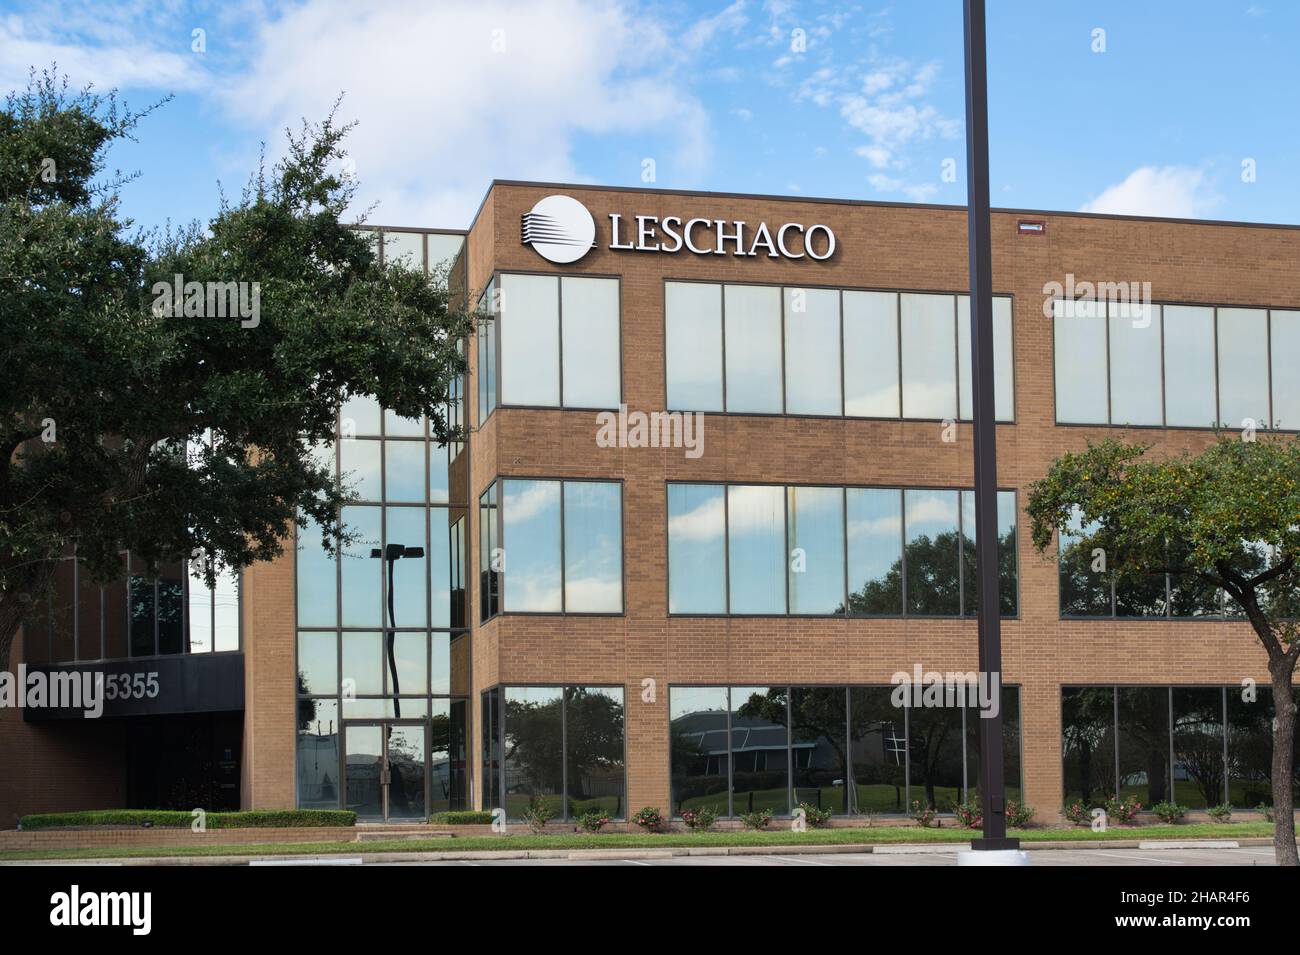 Houston, Texas États-Unis 12-05-2021: Extérieur du bâtiment de bureau de Leschaco à Houston, TX.Fournisseur mondial de services logistiques fondé en 1879. Banque D'Images